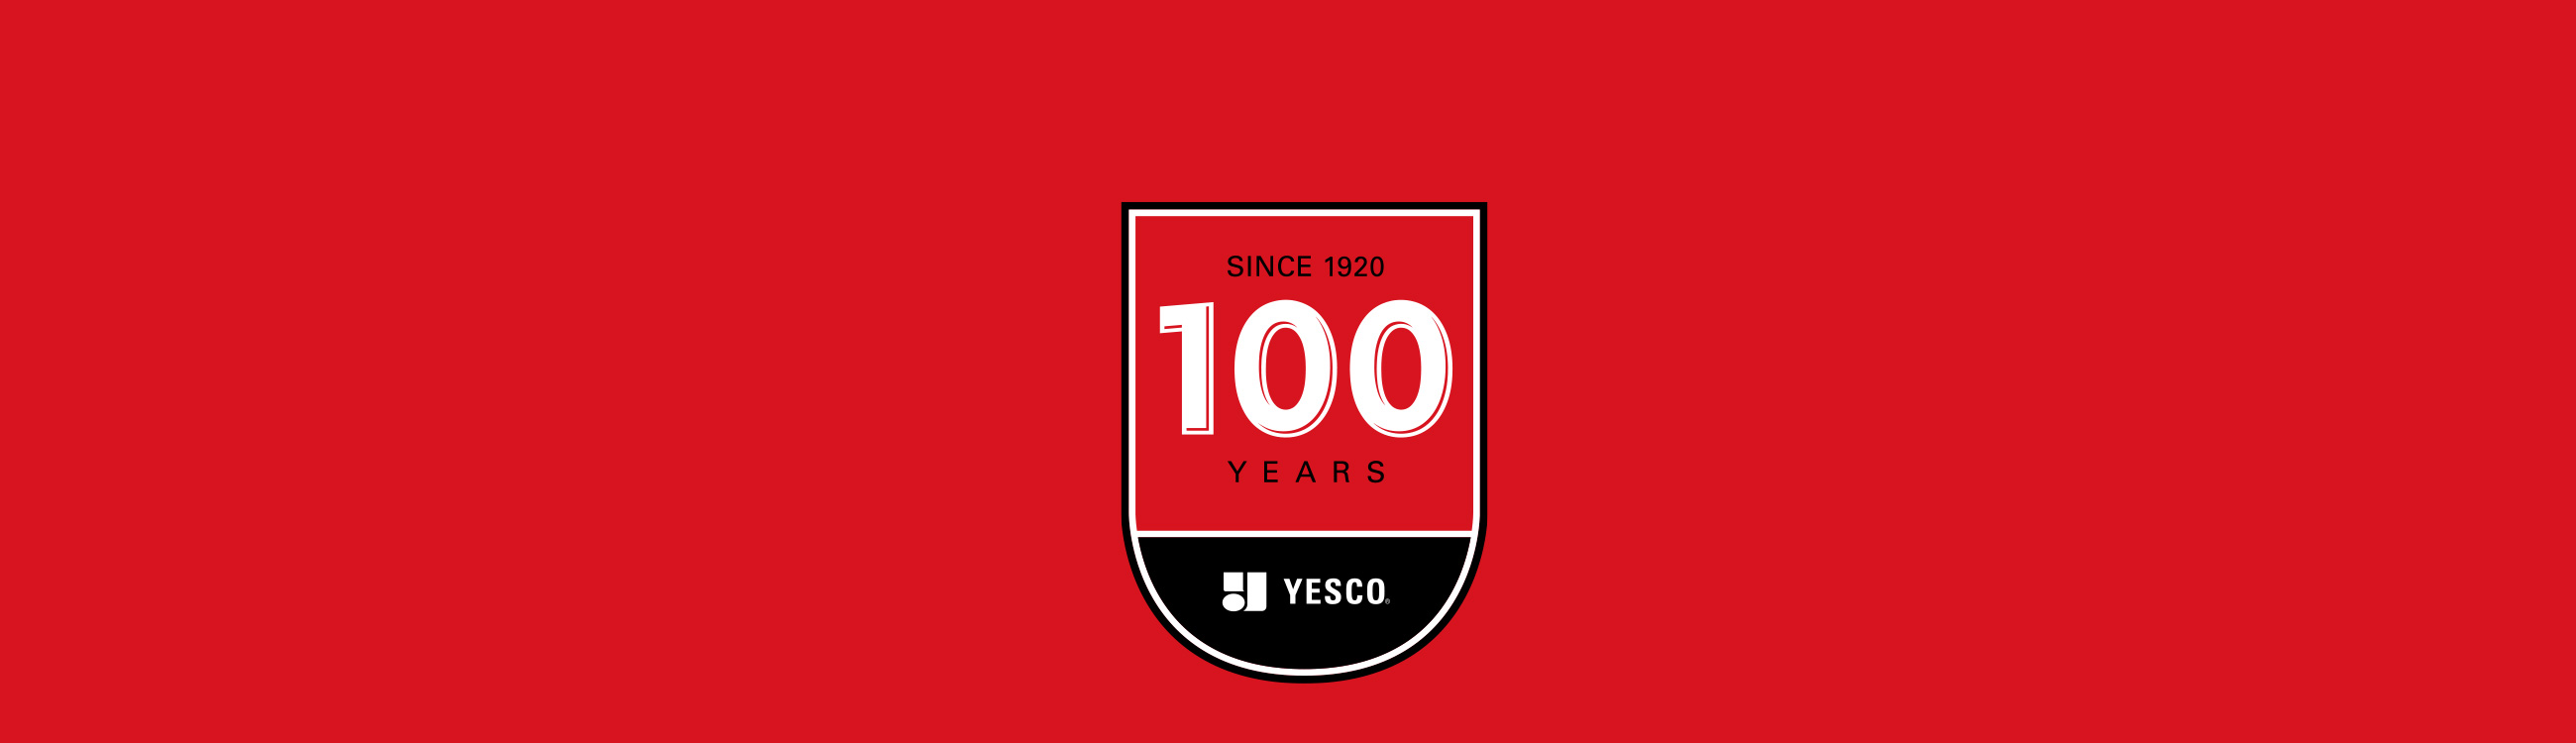 YESCO 100 Years